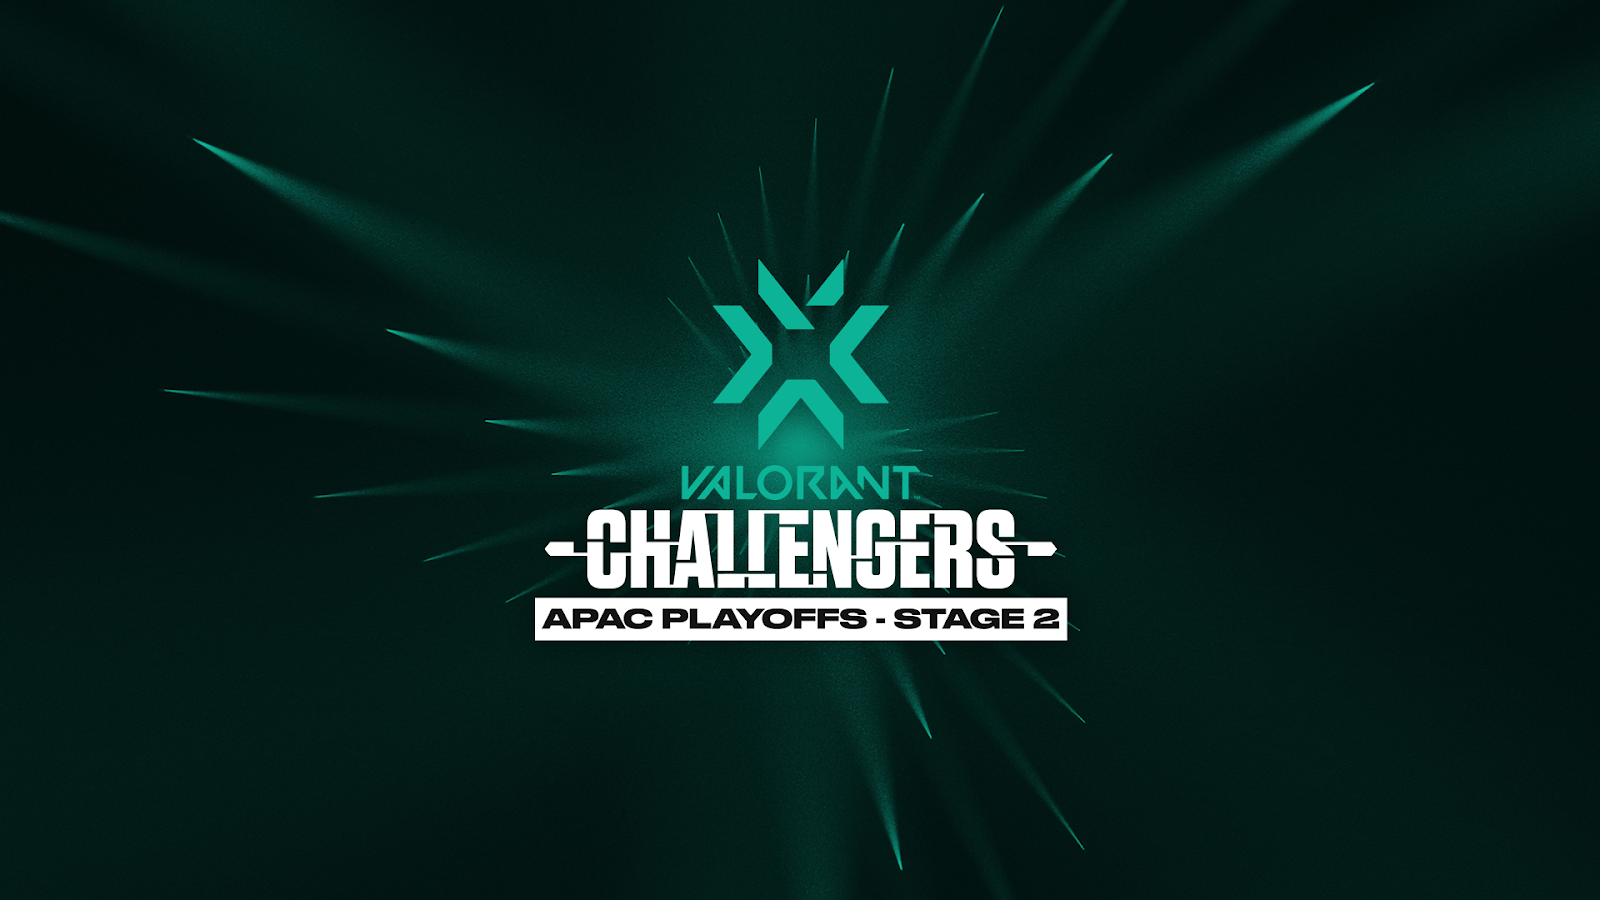 Tổng quan vòng playoff VCT Challengers APAC - Stage 2